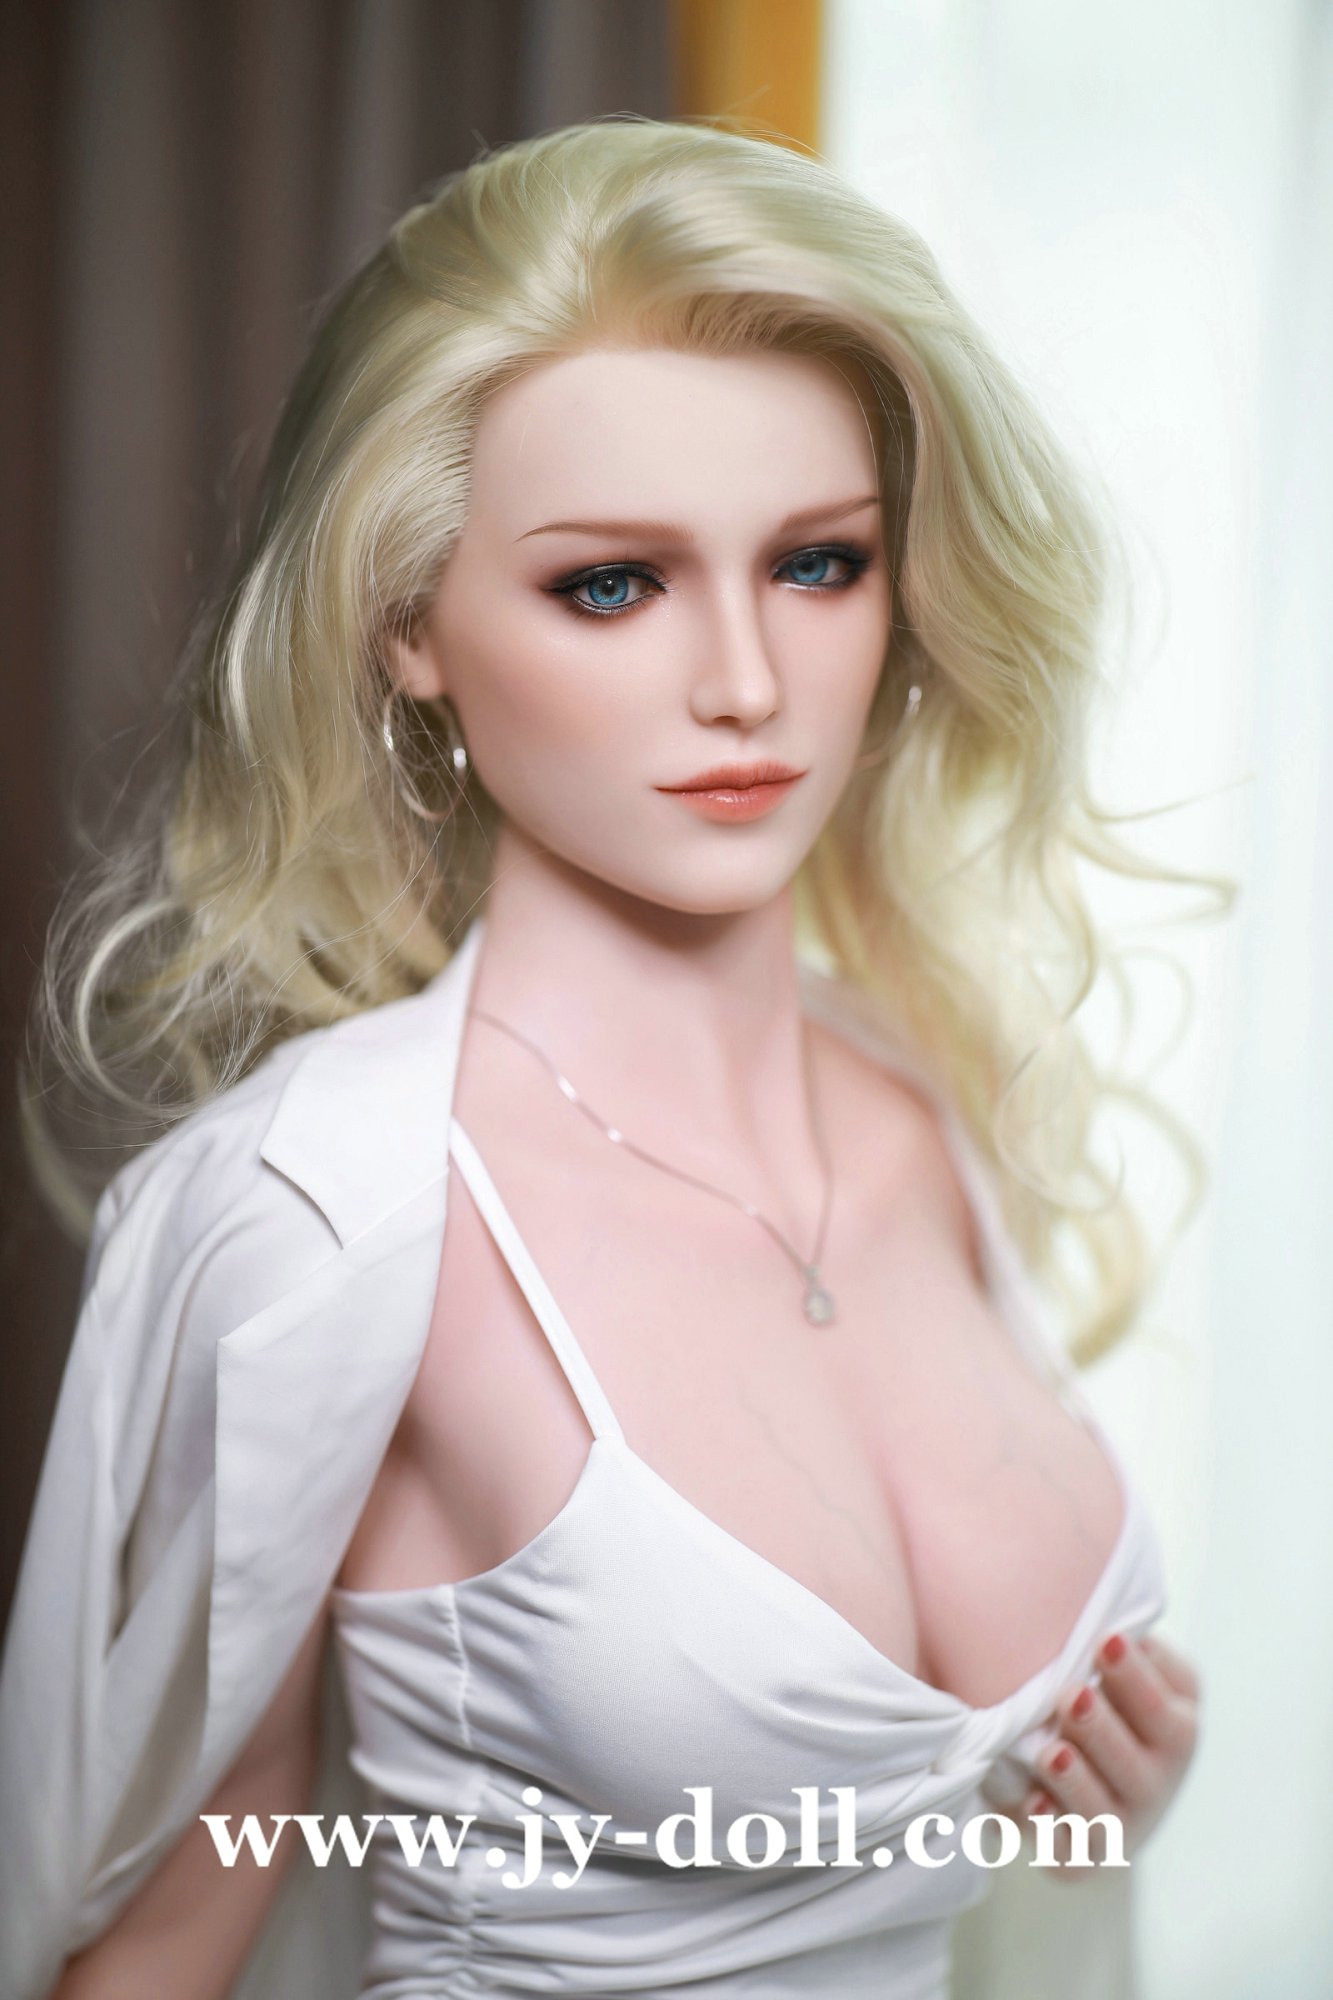 JY Doll 168cm full silicone big boobs love doll Doren